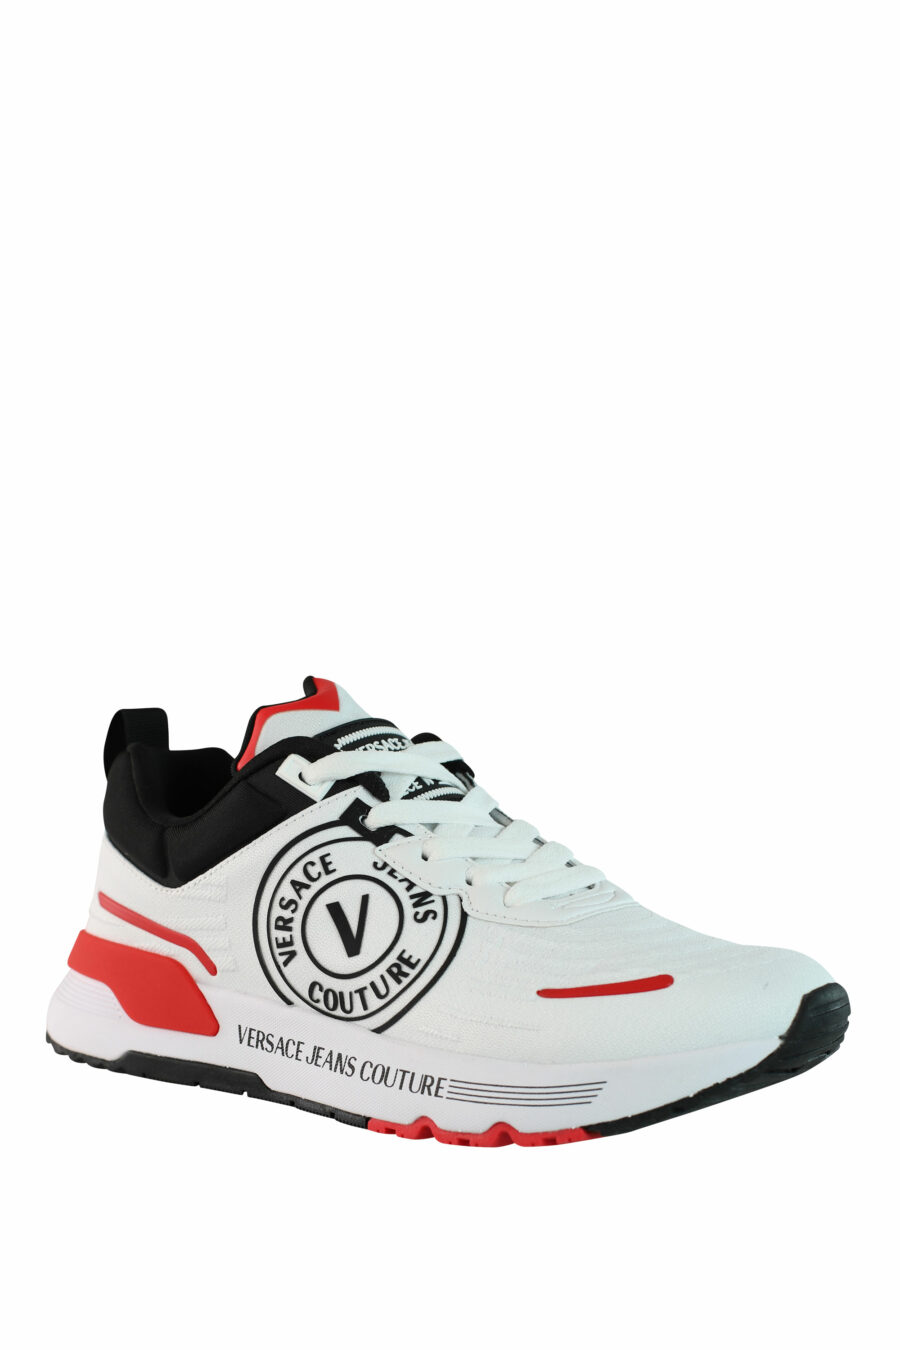 Zapatillas blancas multicolor con logo circular - IMG 0987